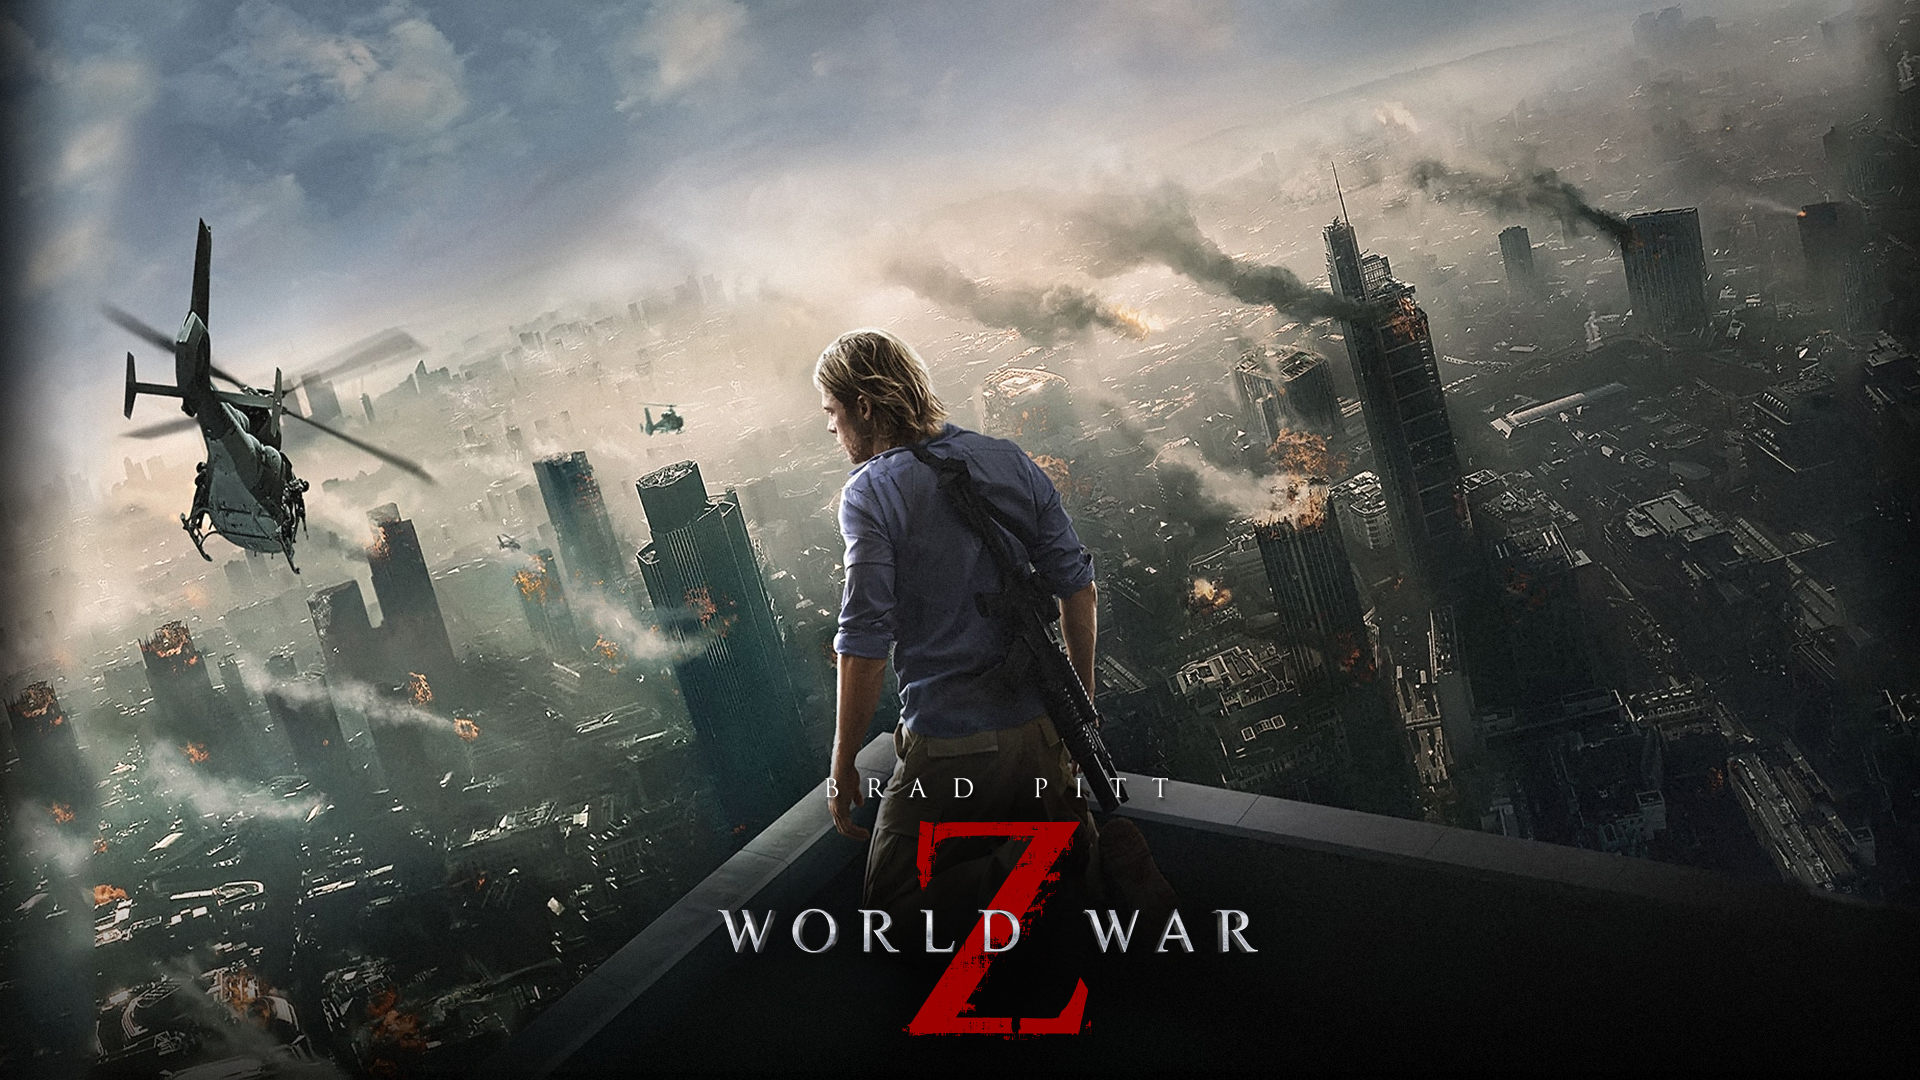 War Z Starring Brad Pitt Widescreen Wallpaper Movie